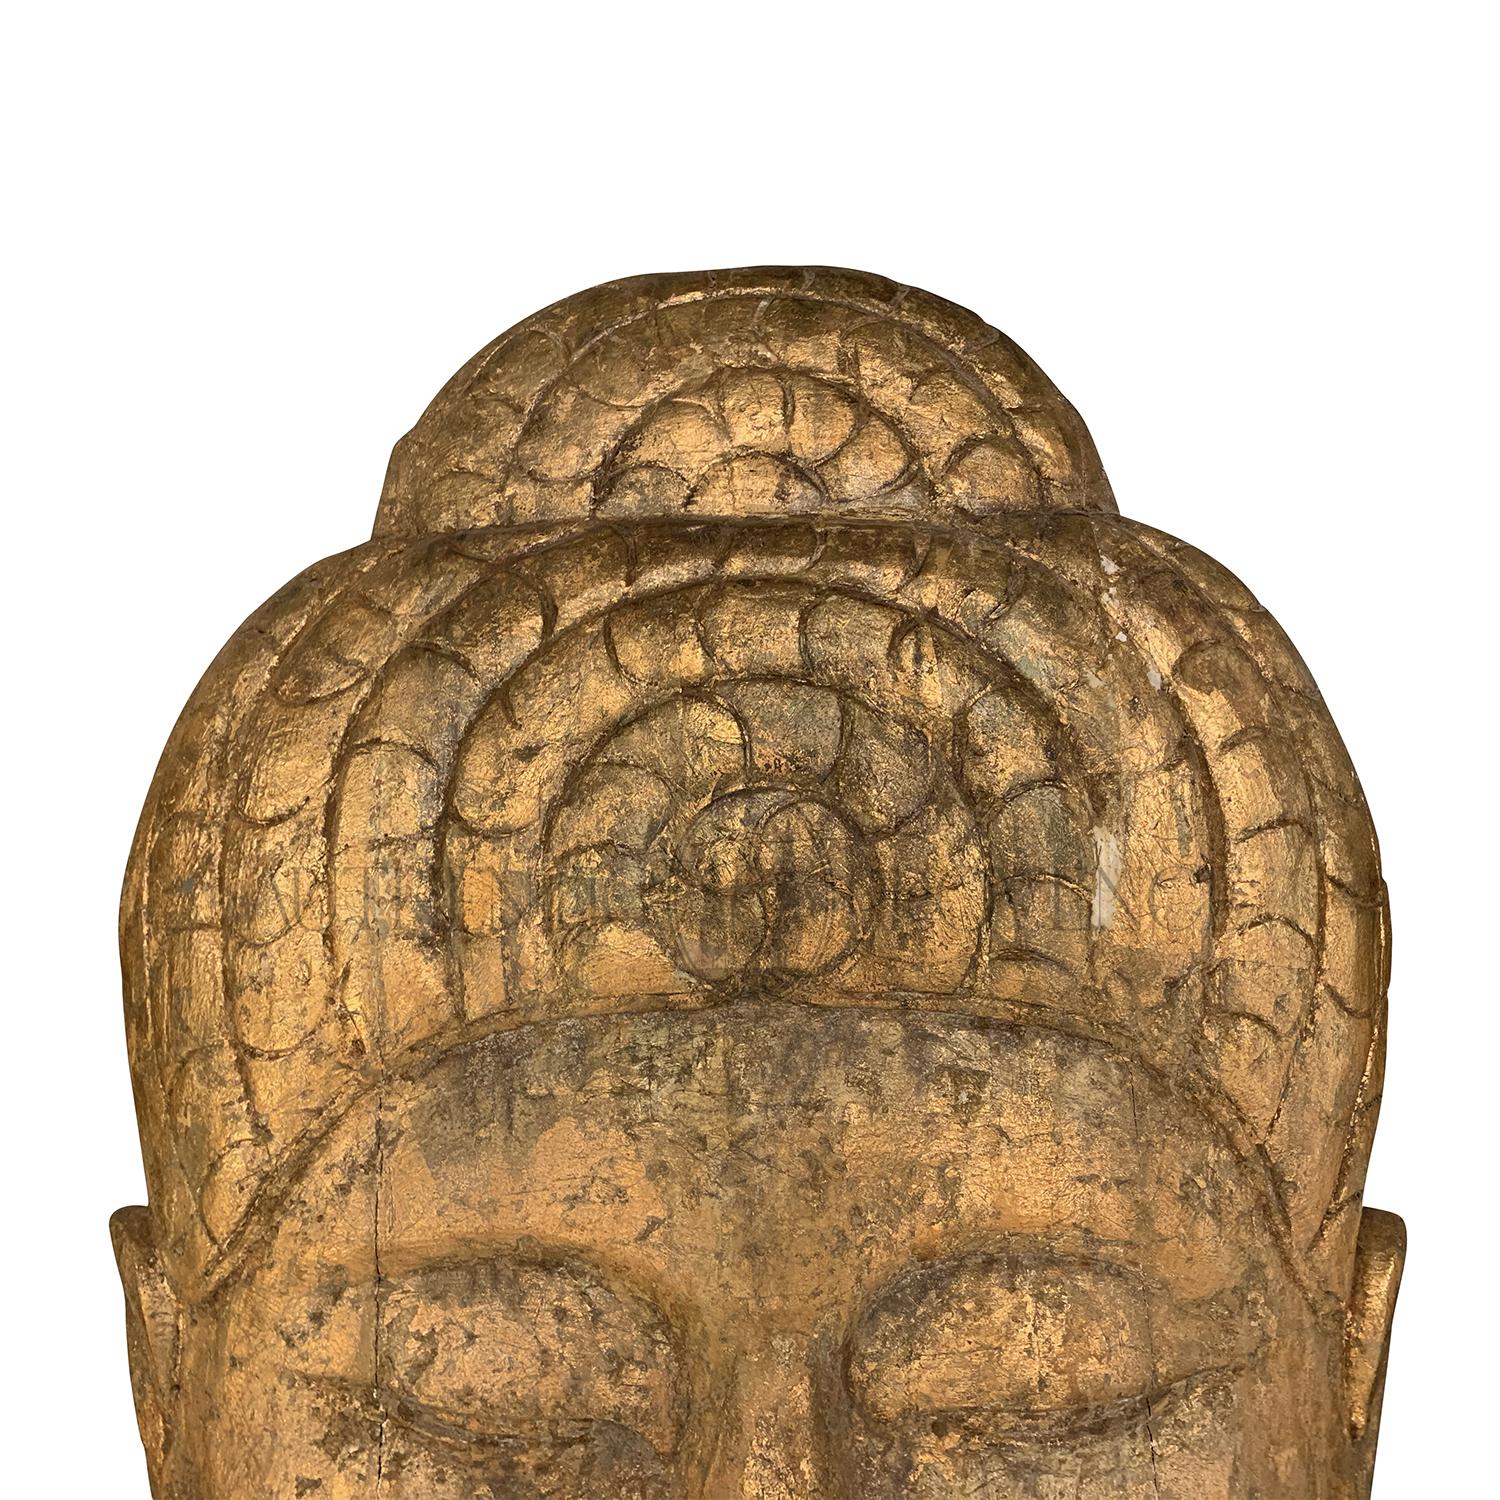 Tête de bouddha décorative antique asiatique surdimensionnée, de couleur brun doré, à très grande échelle, à fixer au mur. Fabriqué à la main en bois tropical et doré, en bon état. Usures dues à l'âge et à l'utilisation. circa 1910, Myanmar.